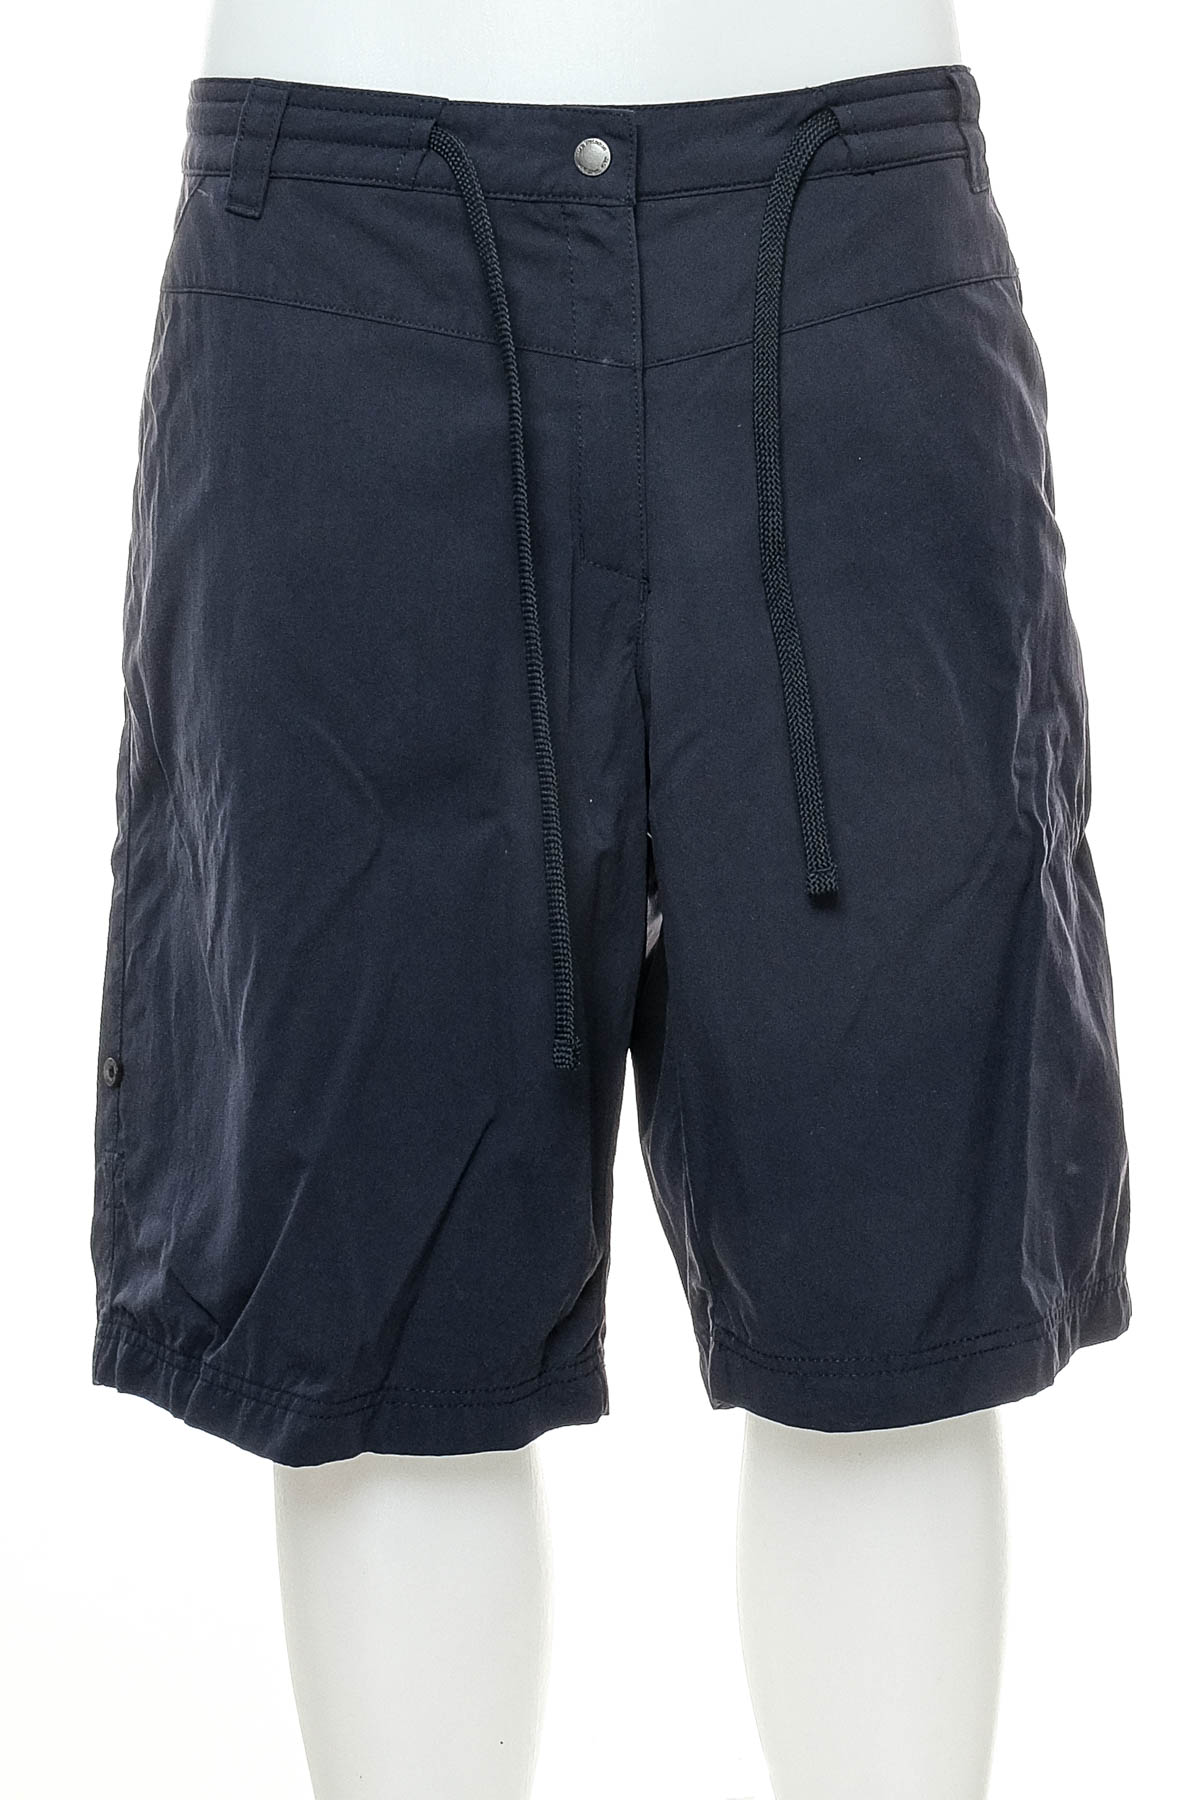 Female shorts - Jack Wolfskin - 0